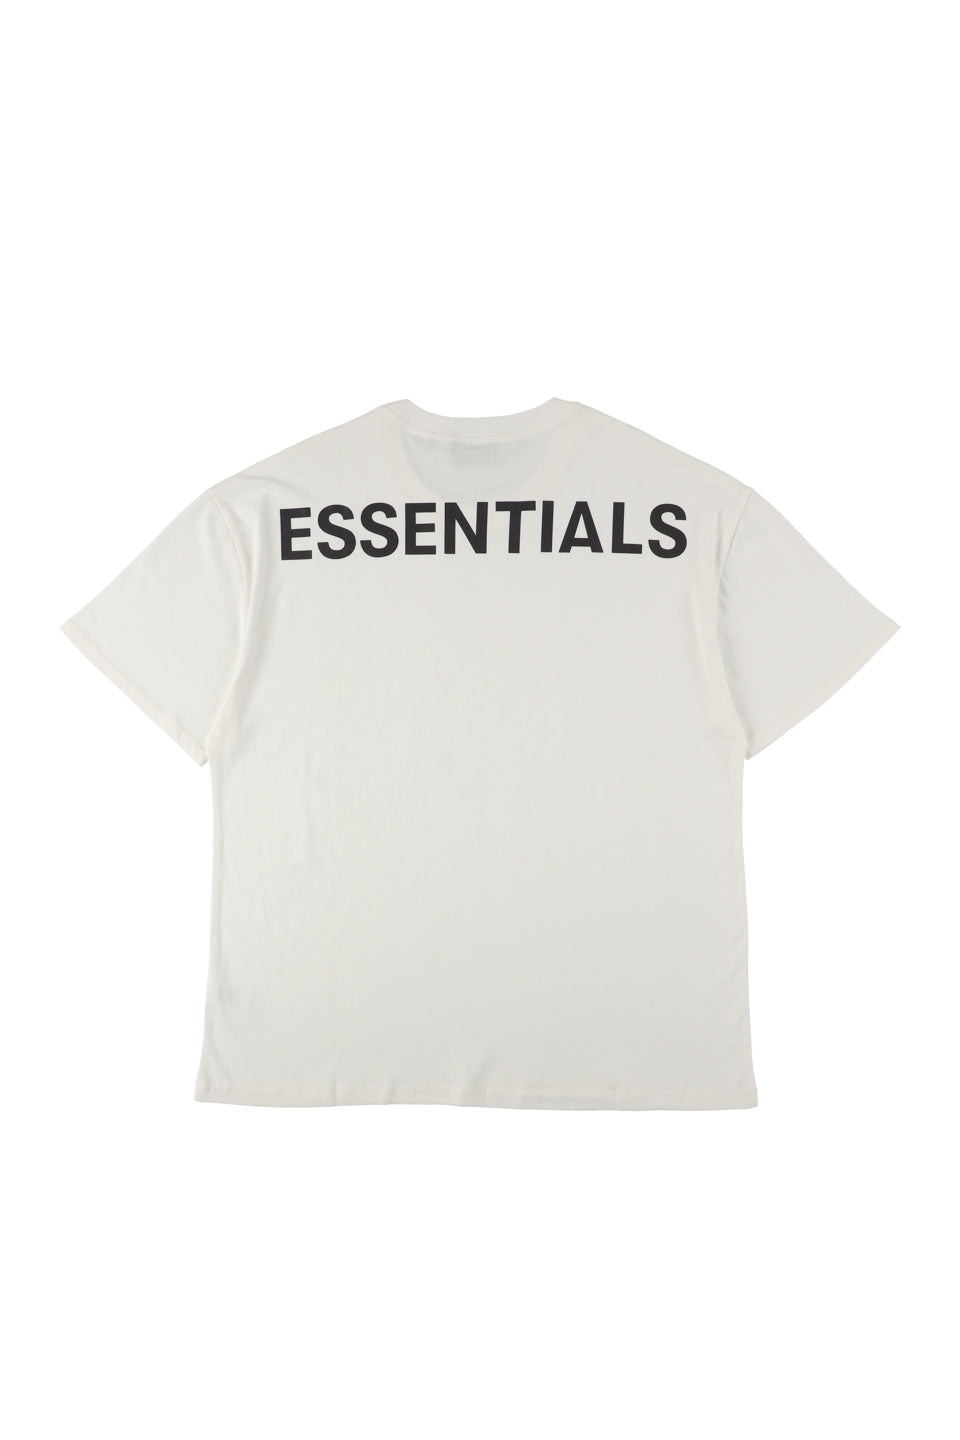 FEAR OF GOD Essentials Boxy Logo T-shirt